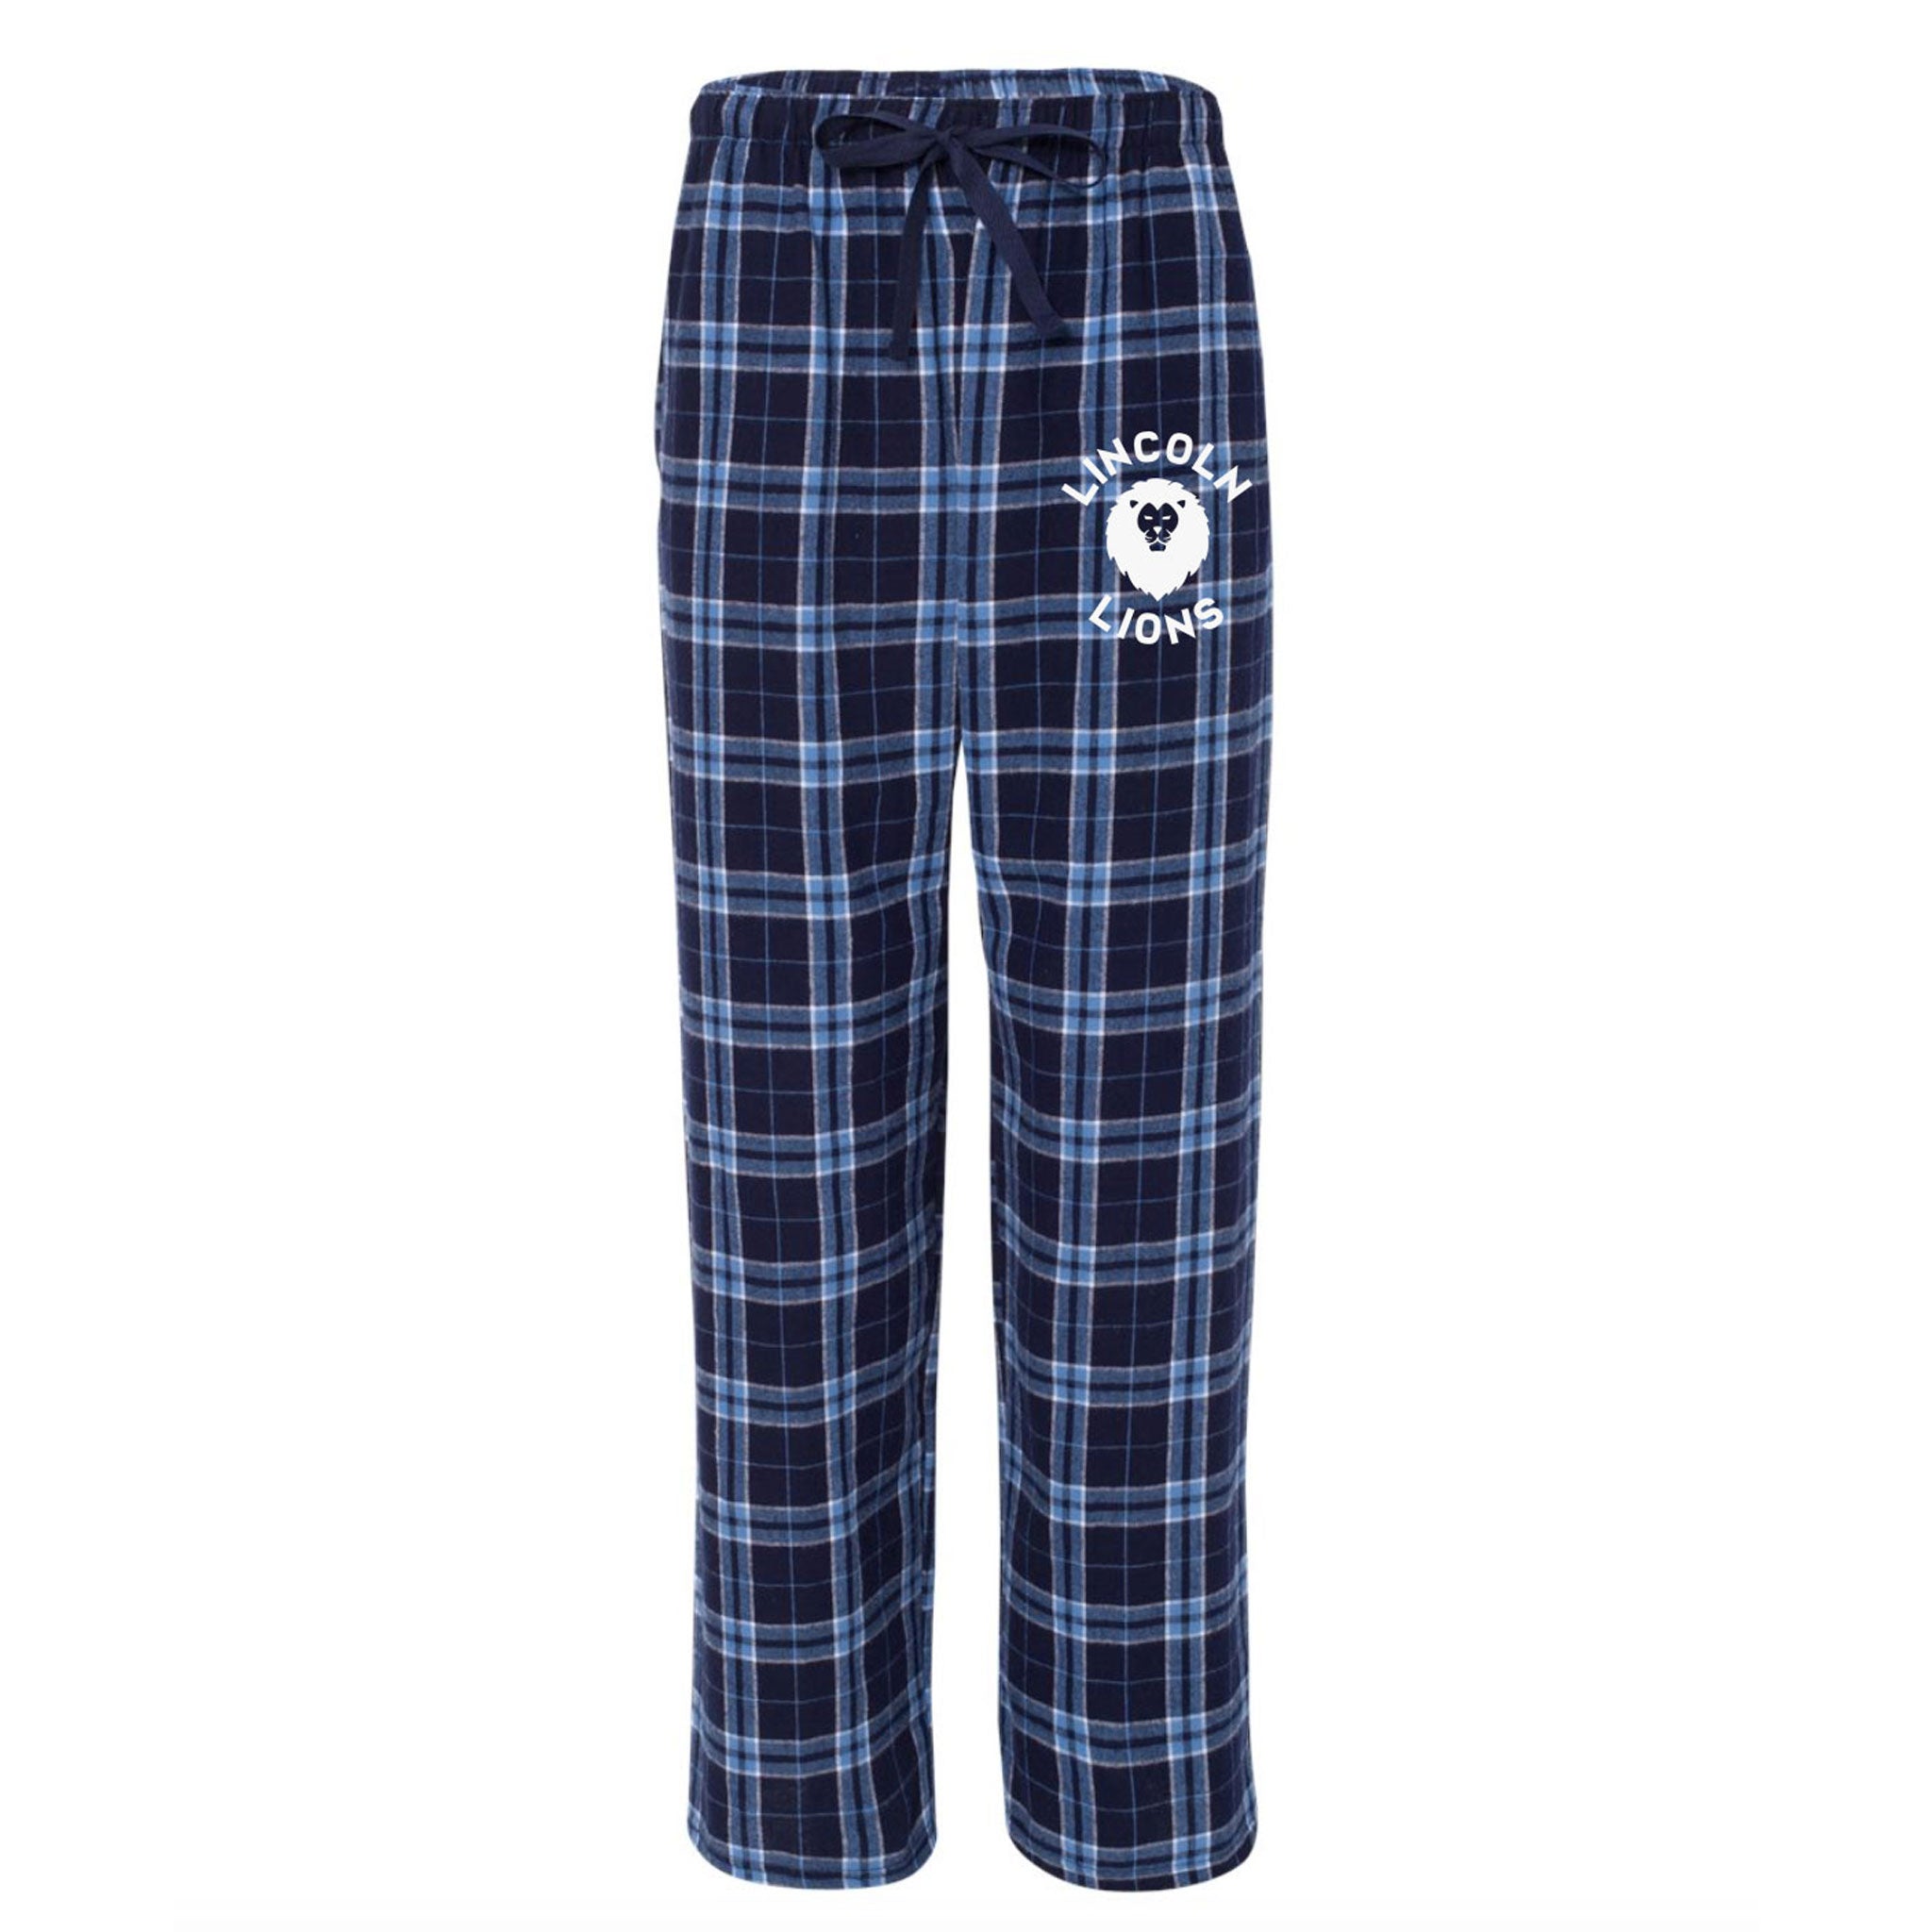 Lincoln Adult Pajama Pants - Navy/Columbia